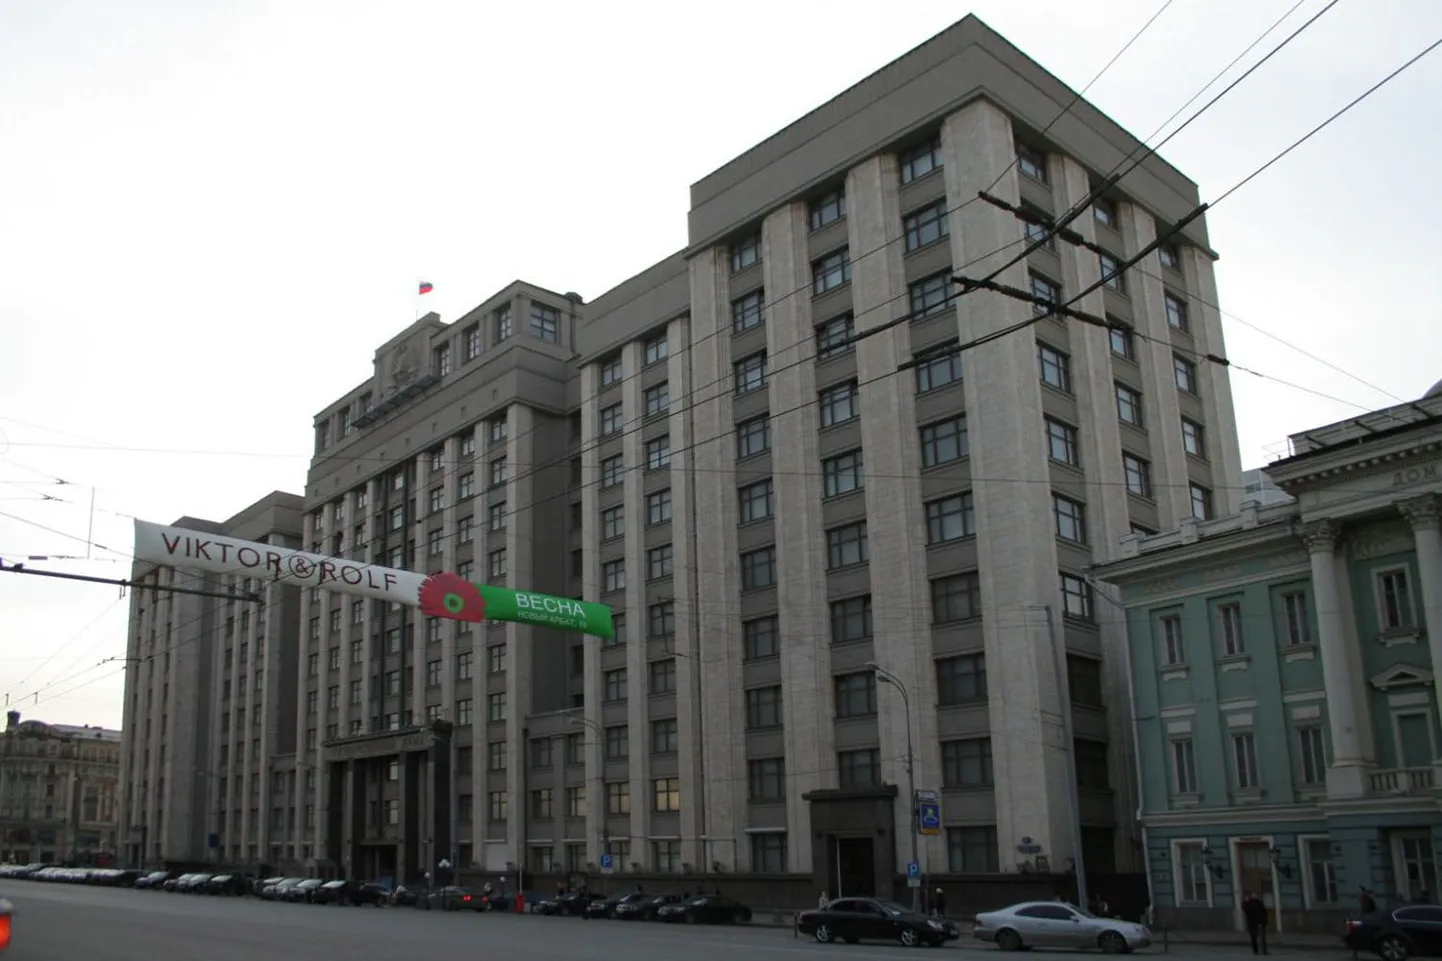 Vene riigiduuma hoone.